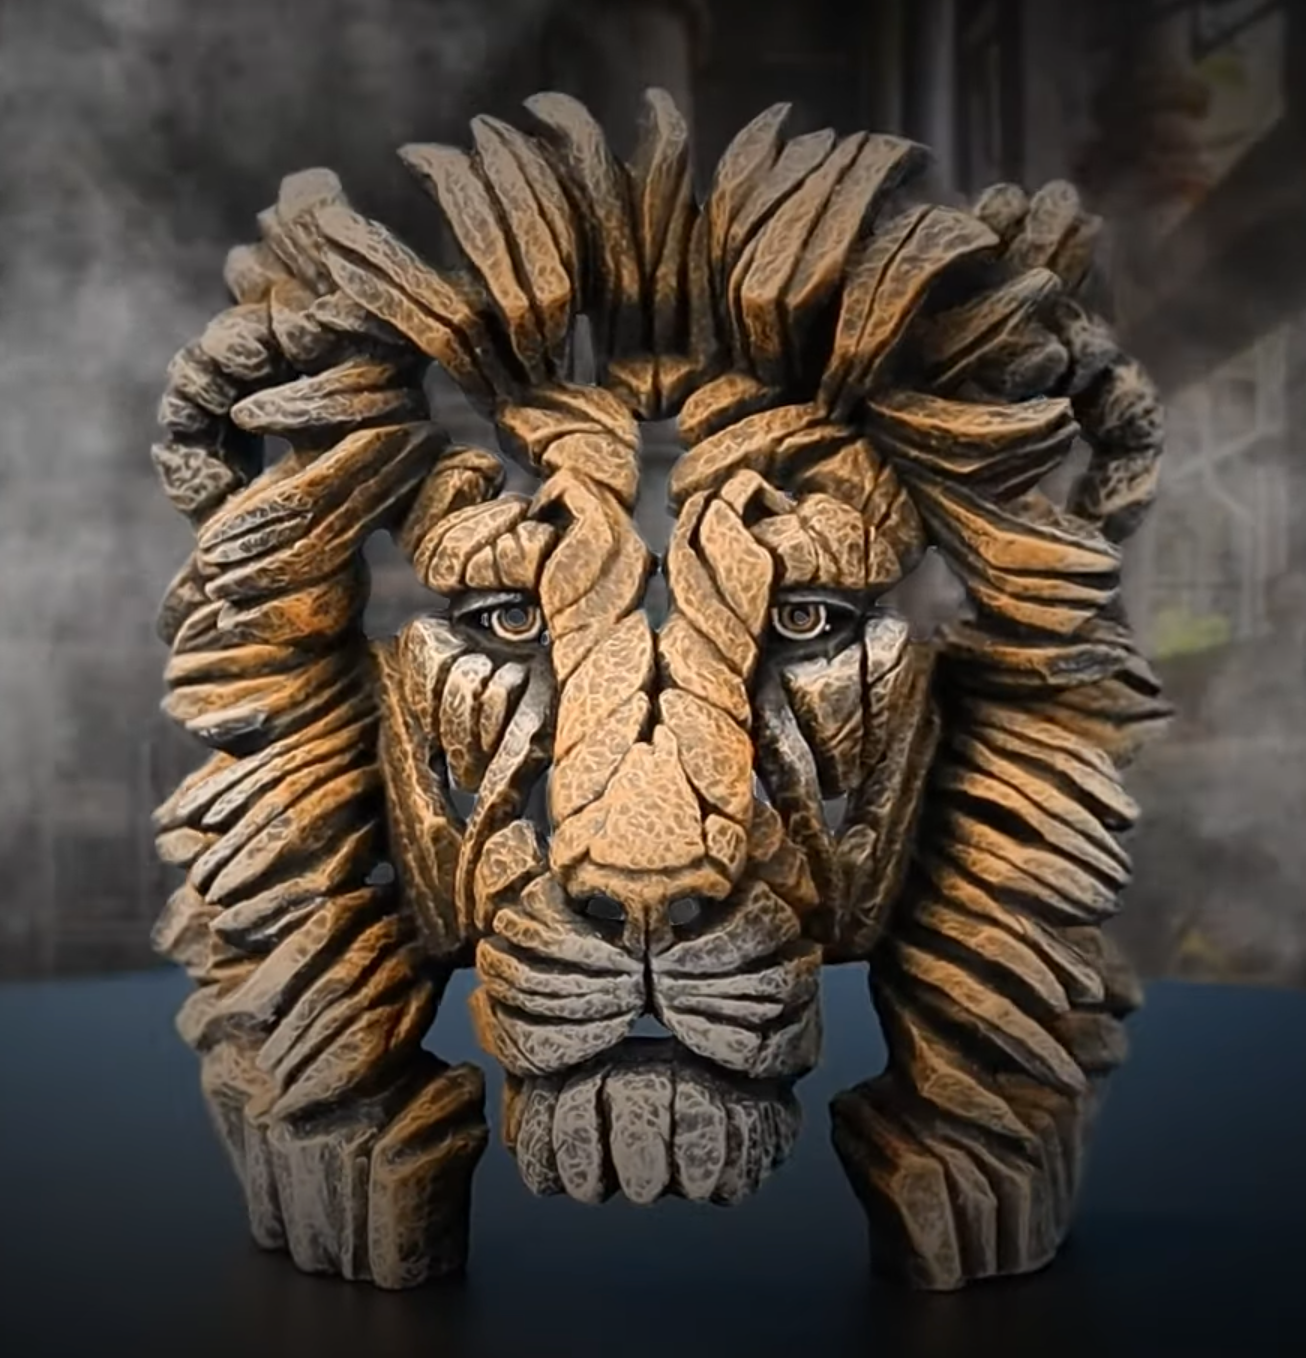 Edge Sculpture Miniature Lion Bust Savannah by Matt Buckley